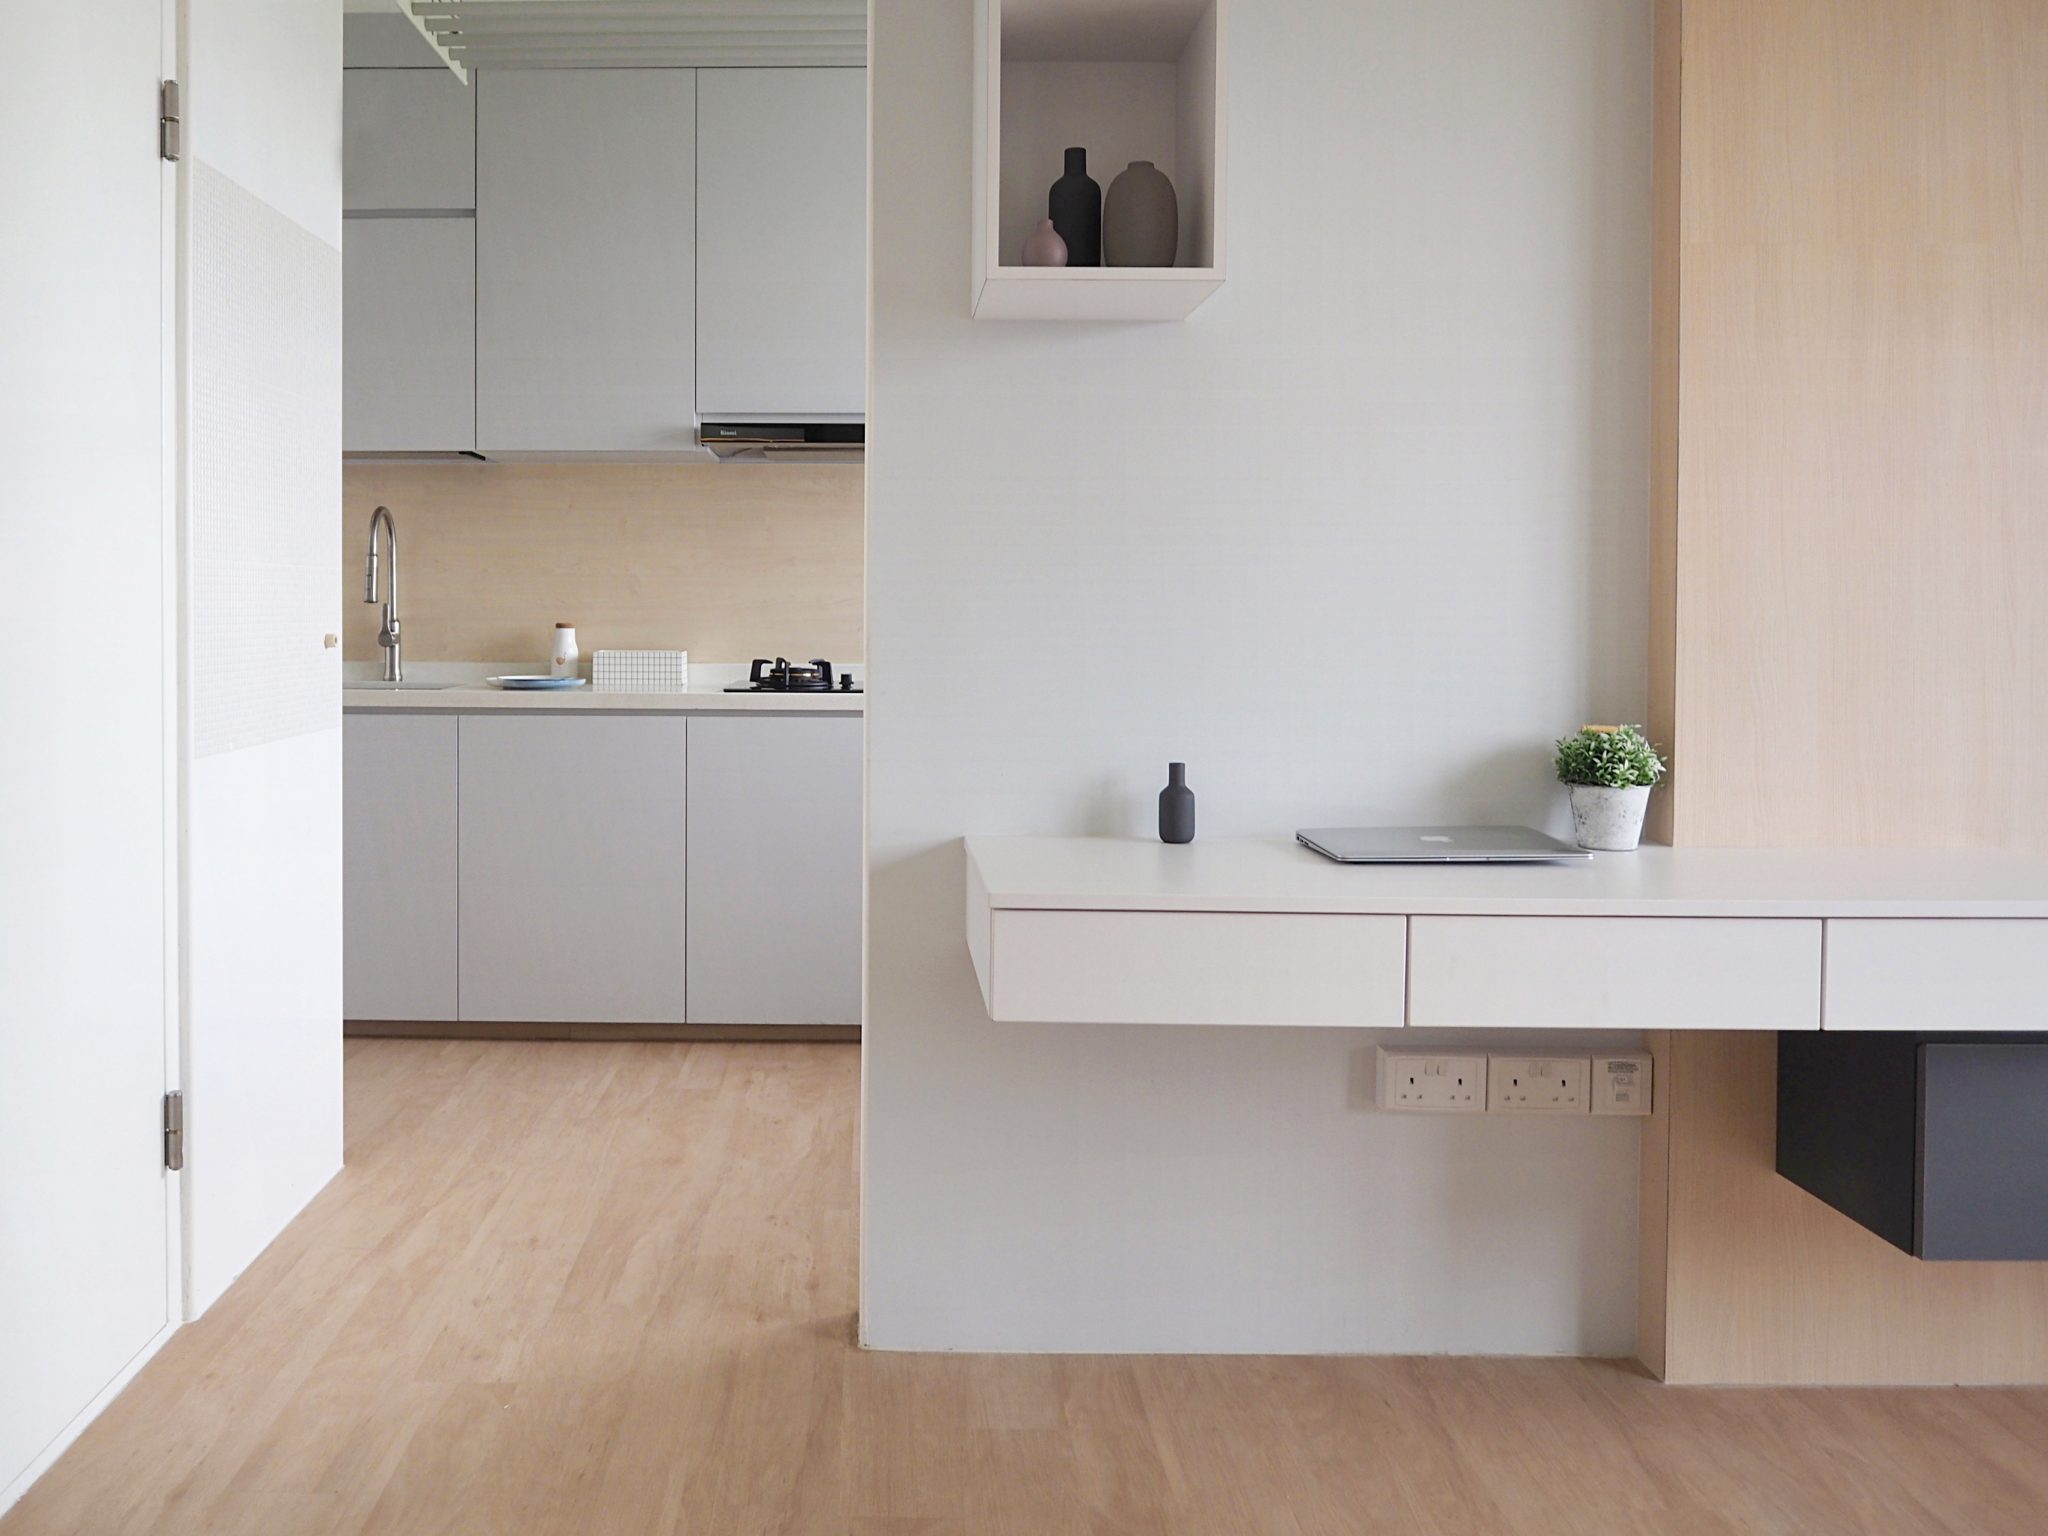 Know about hdb minimalist interior design